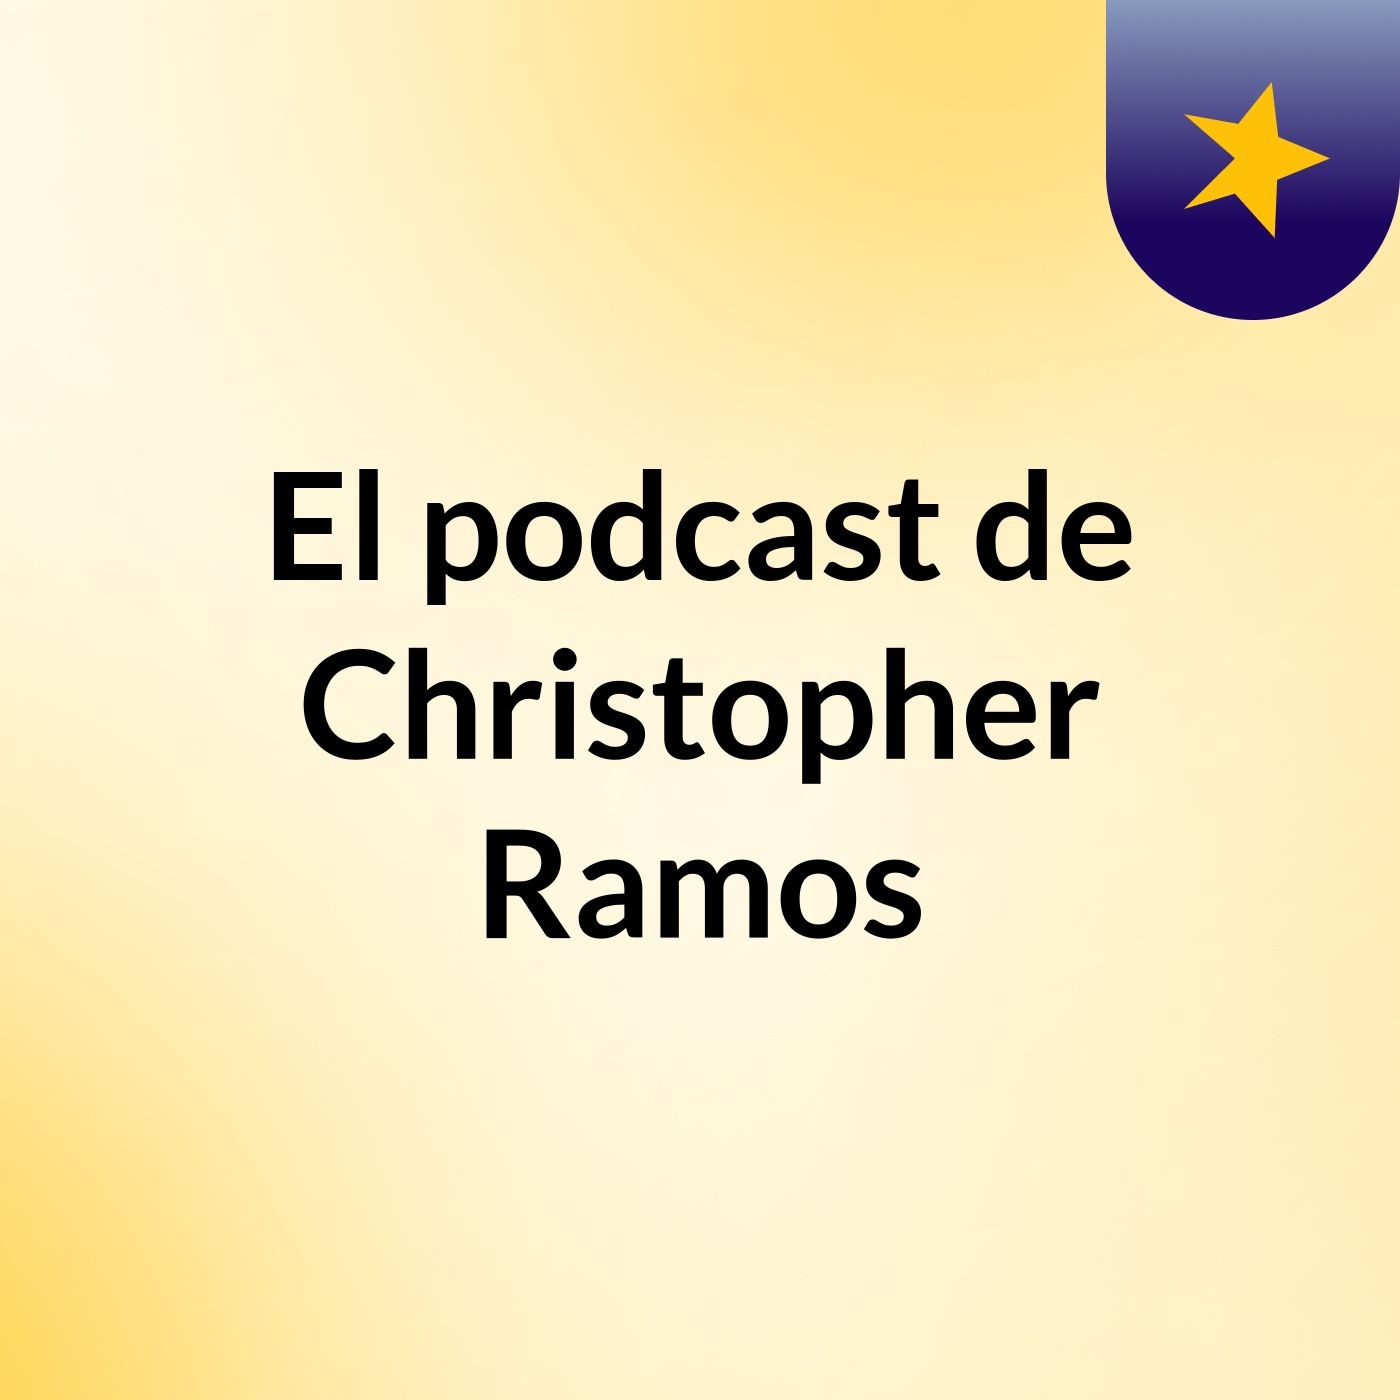 El podcast de Christopher Ramos